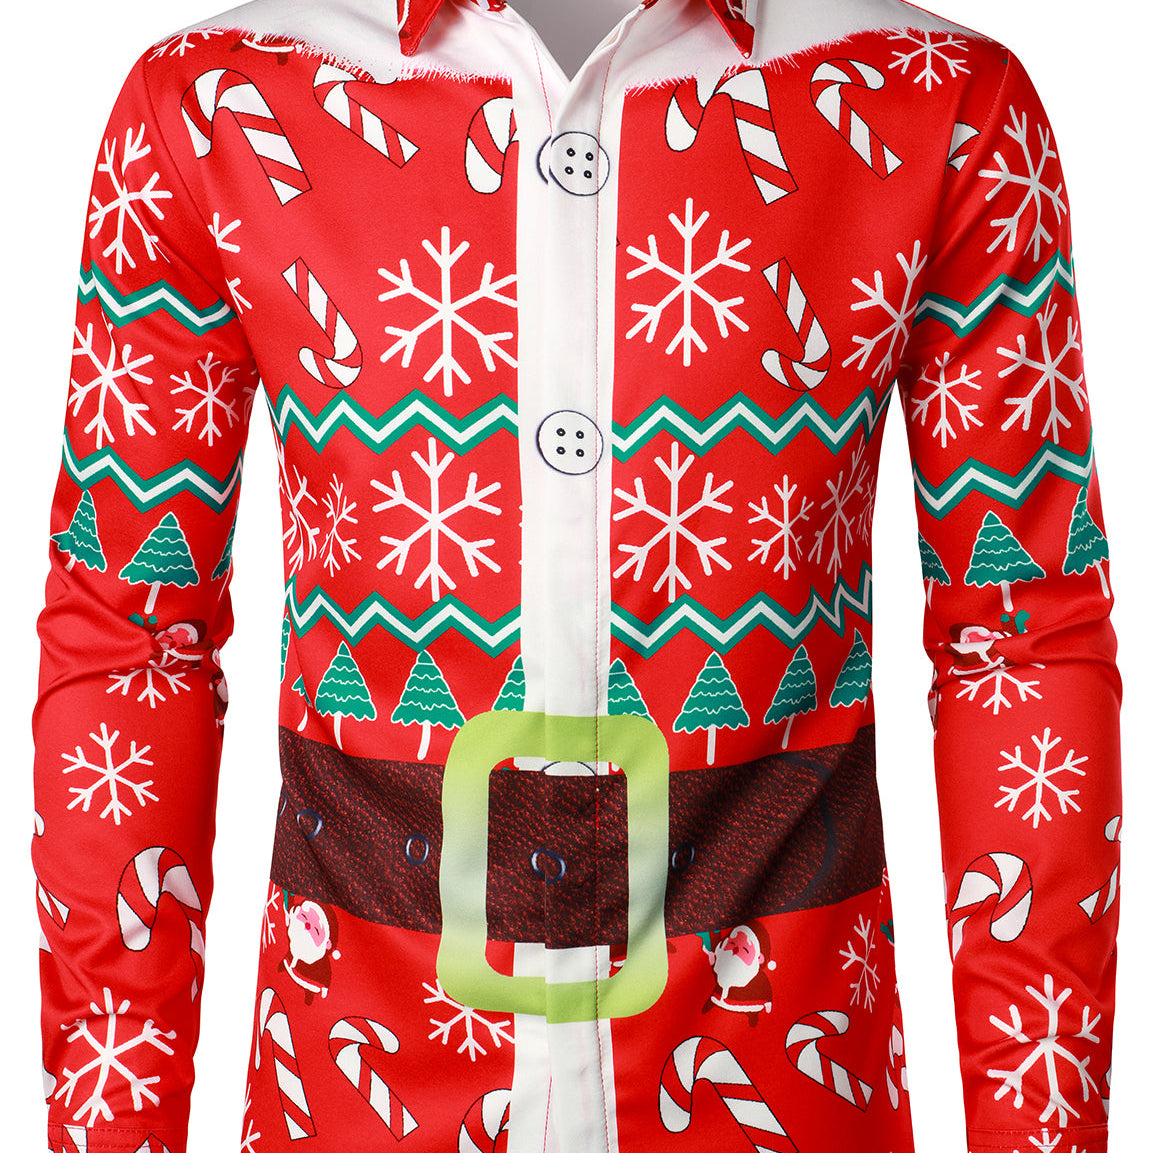 Homme Noël Candy Snowflake Print Santa Claus Rouge Drôle de tenue Chemise à manches longues